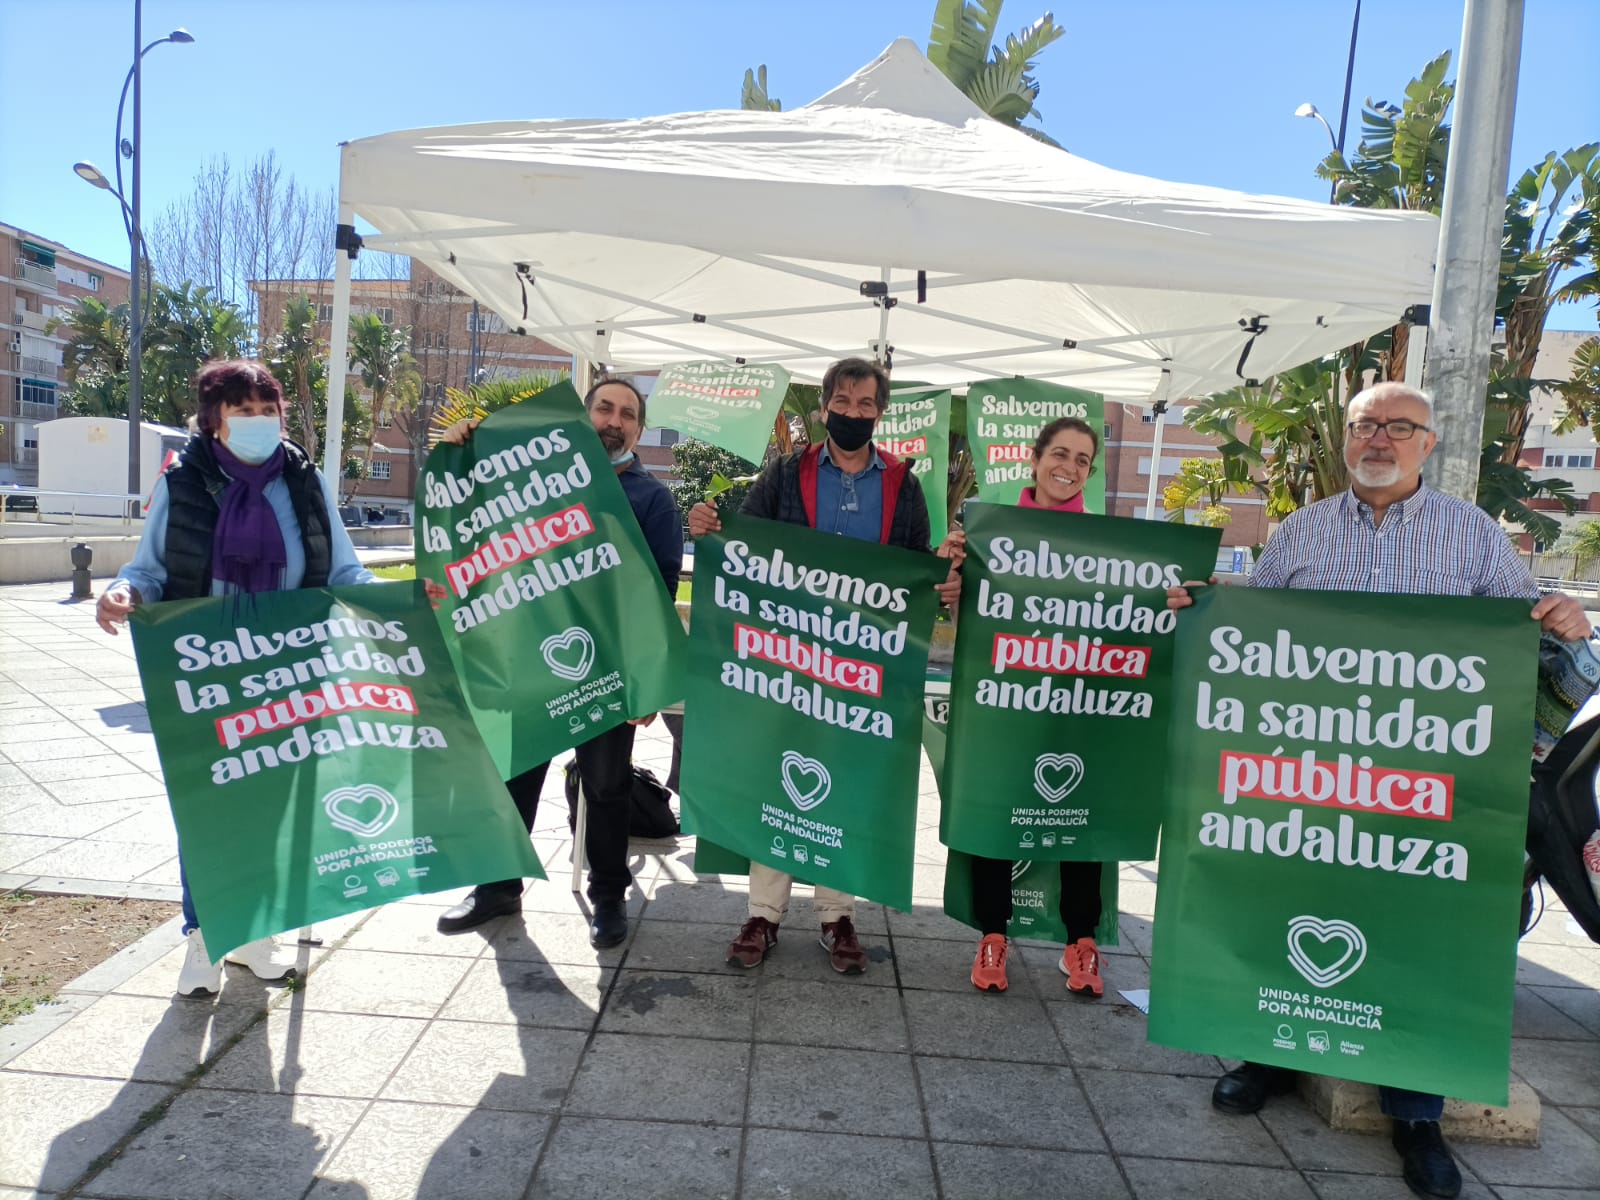 UP hace un llamamiento a la movilización ciudadana en defensa de la calidad de la sanidad pública andaluza